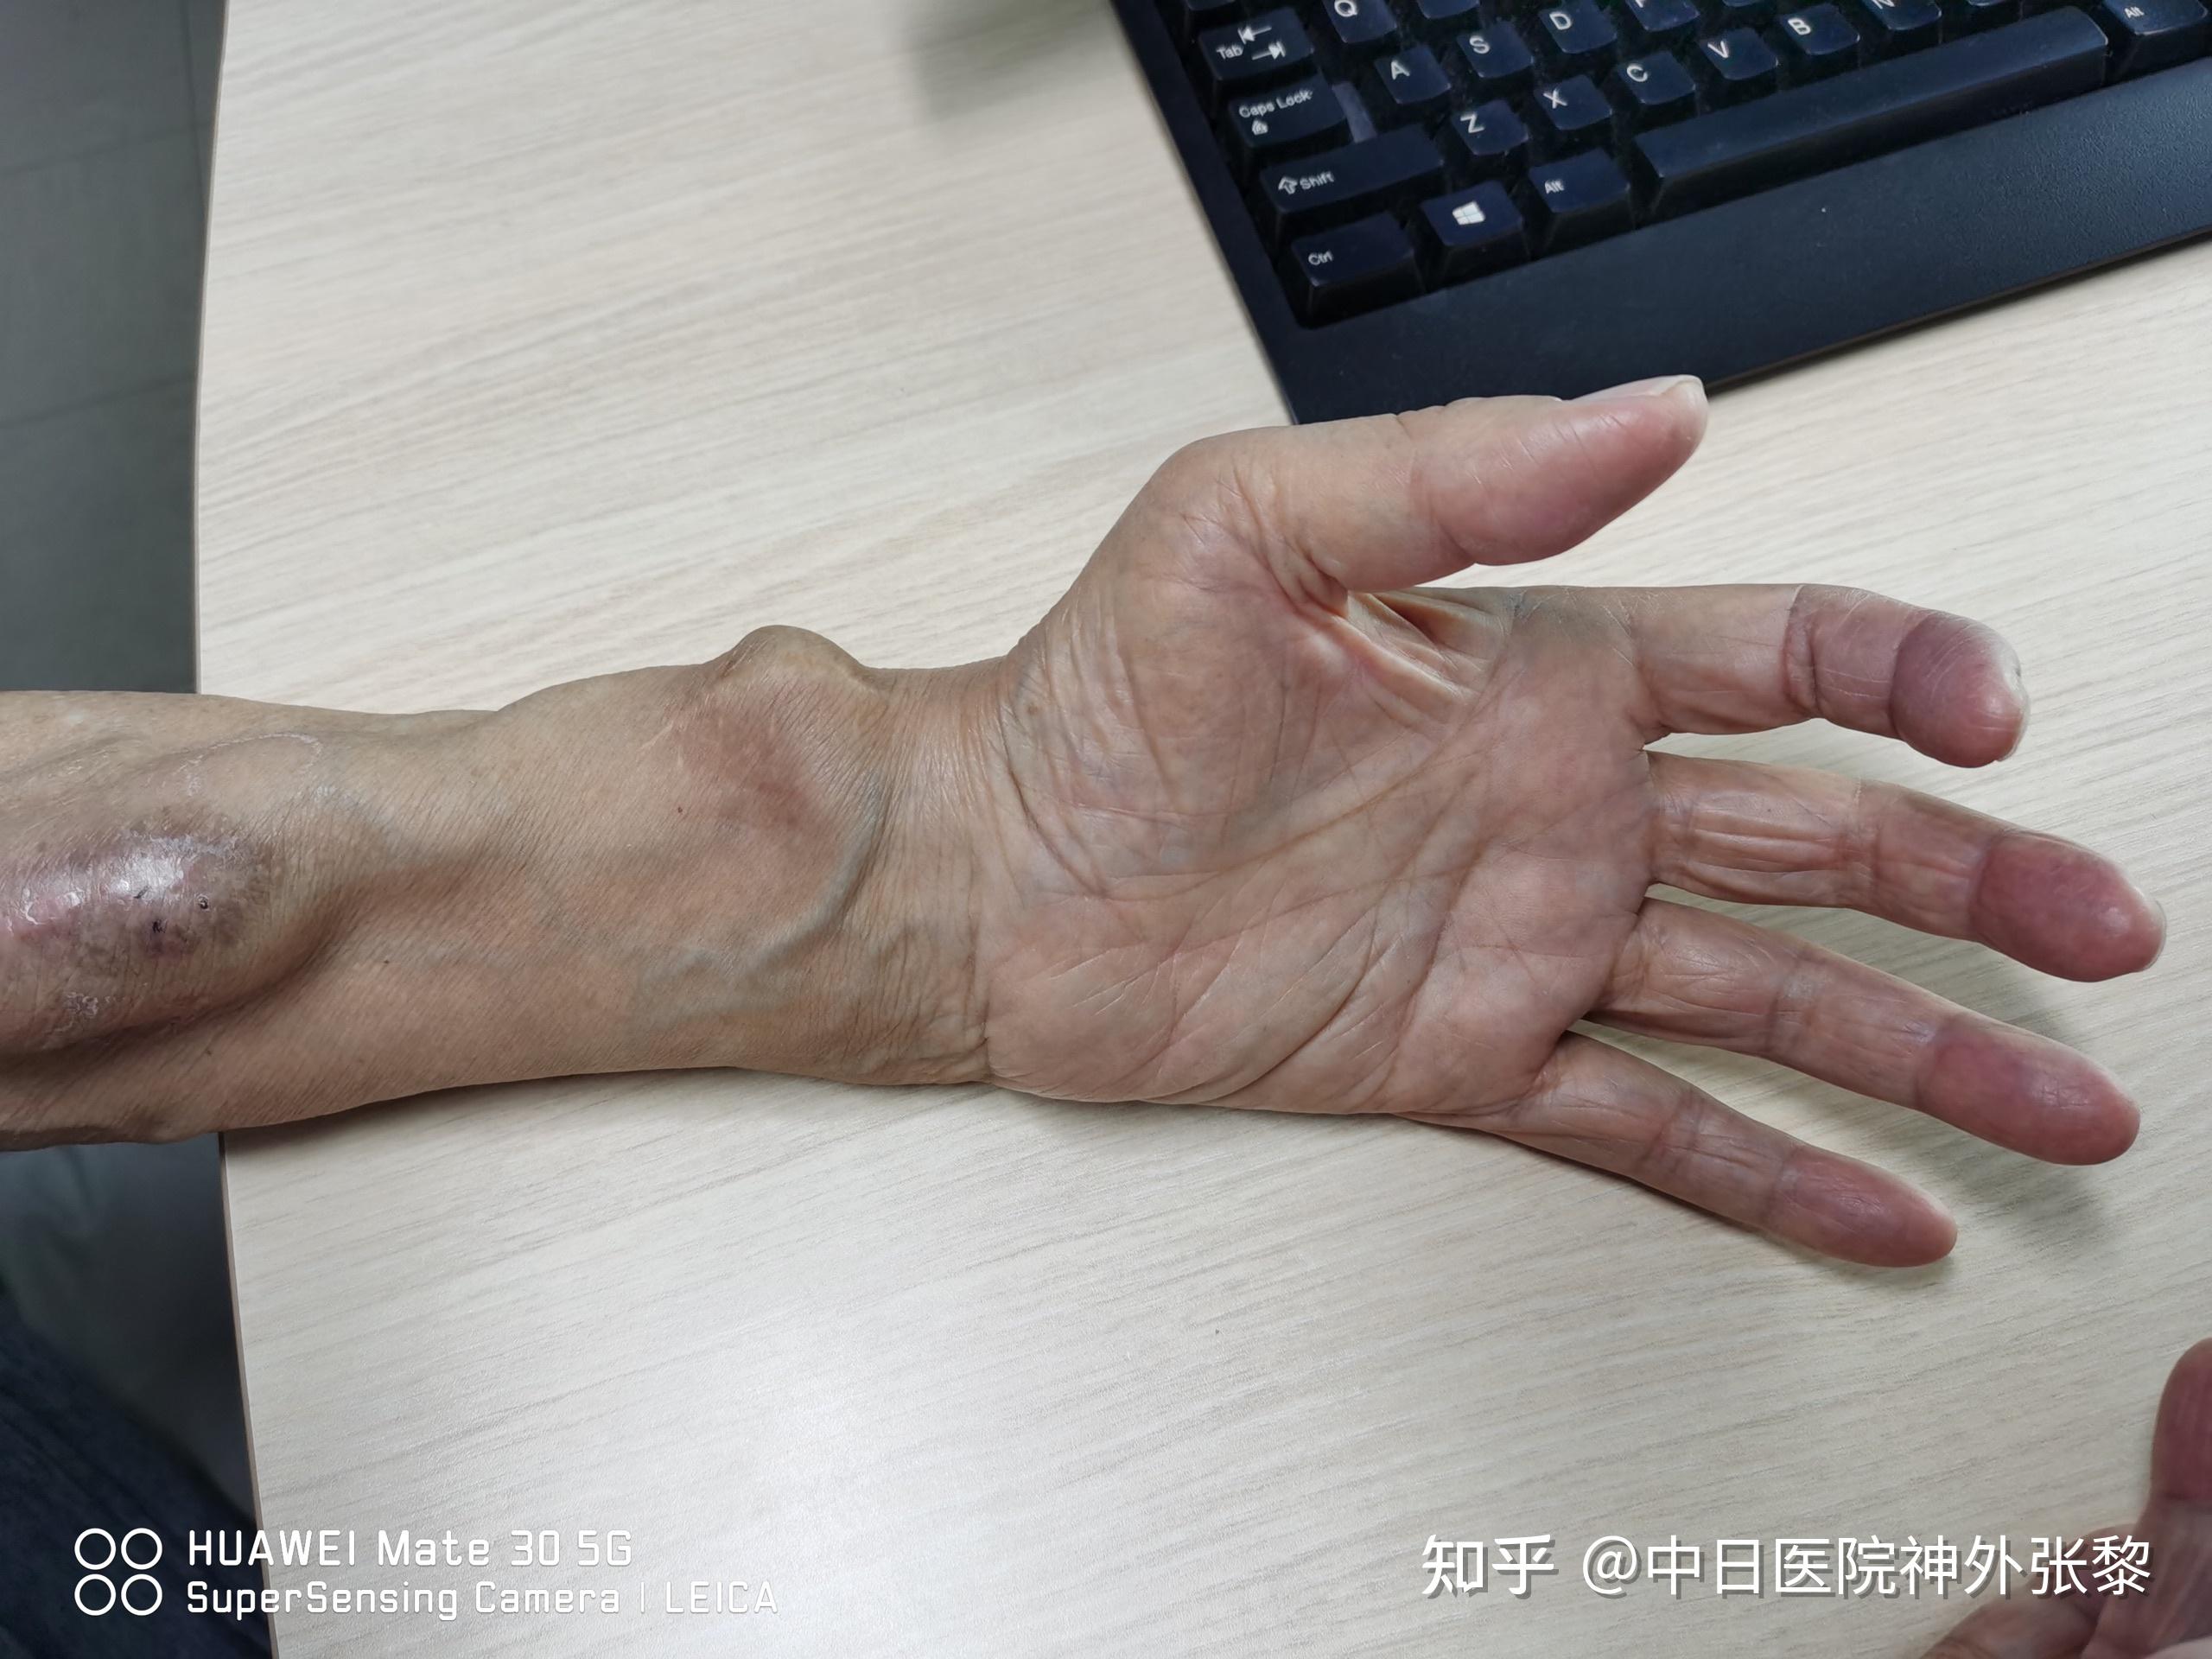 晚期出现手部小肌肉广泛萎缩,手废用,最终形成爪形手3